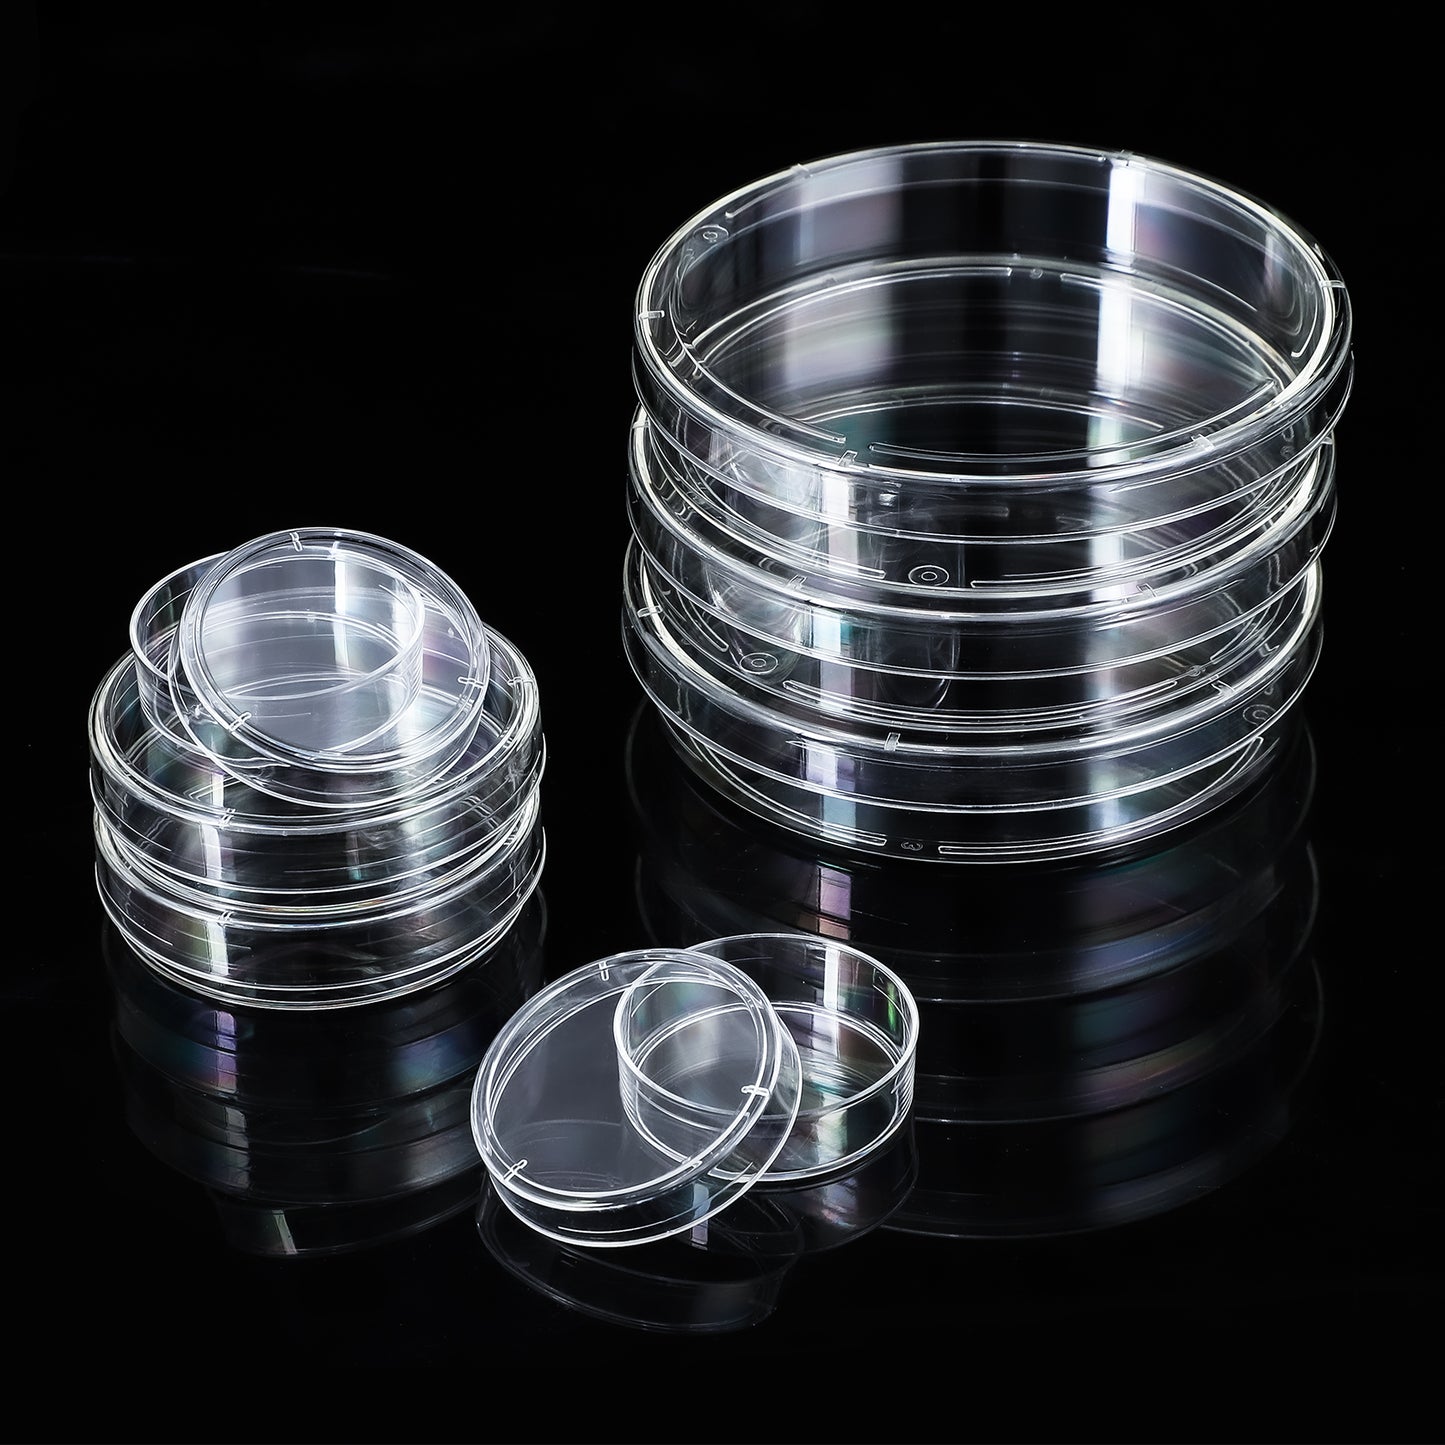 Cell Culture Dish - Four E's USA (A Four E's Scientific Company)